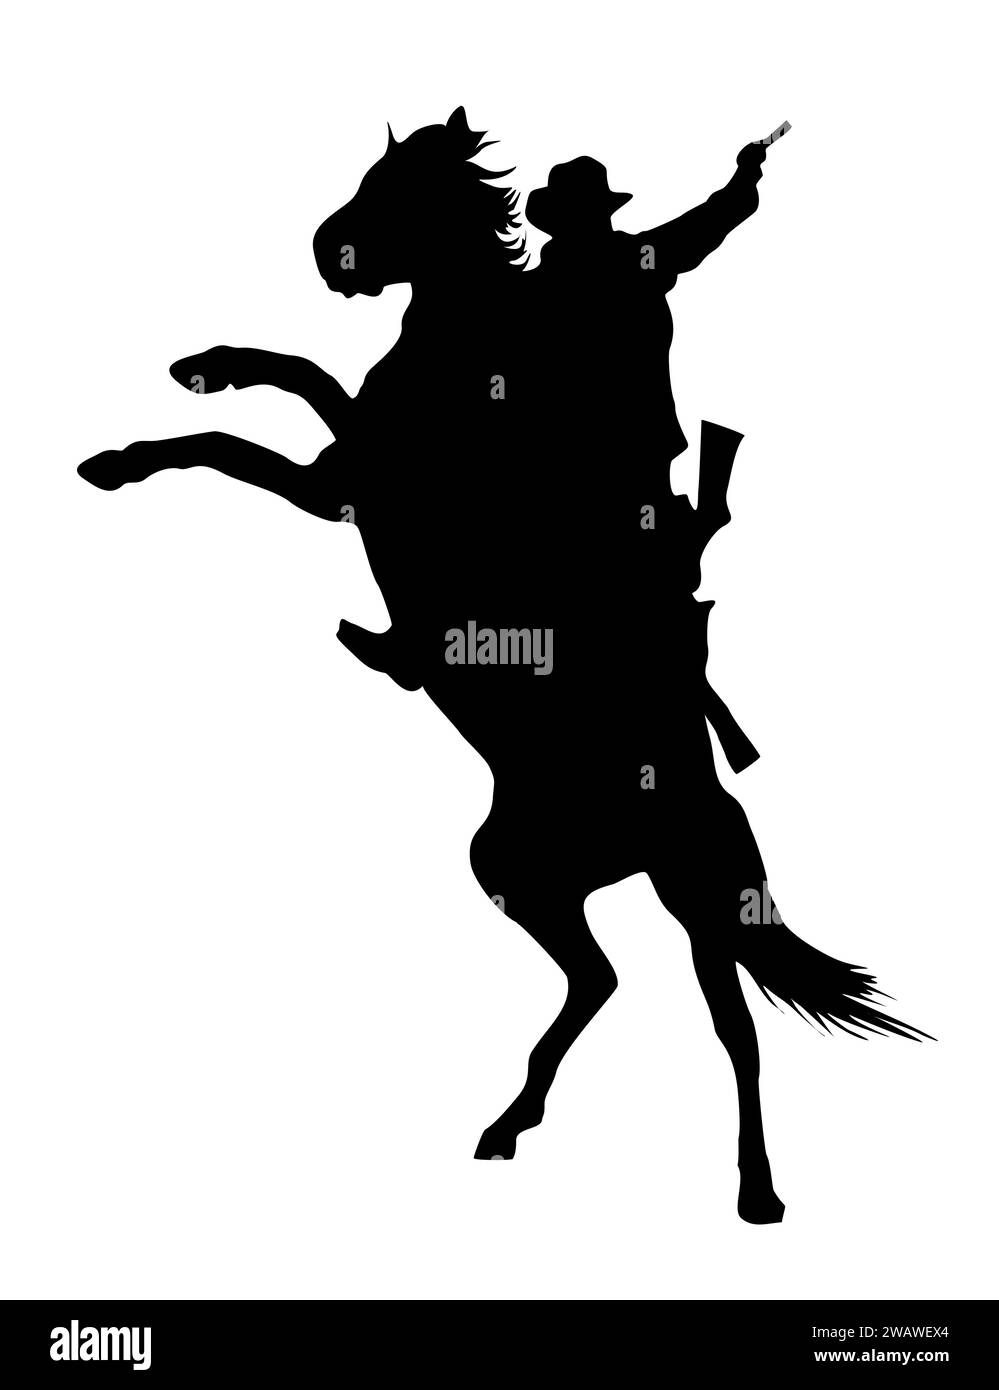 Silhouette of cowboy riding wild horse vector. Stock Vector